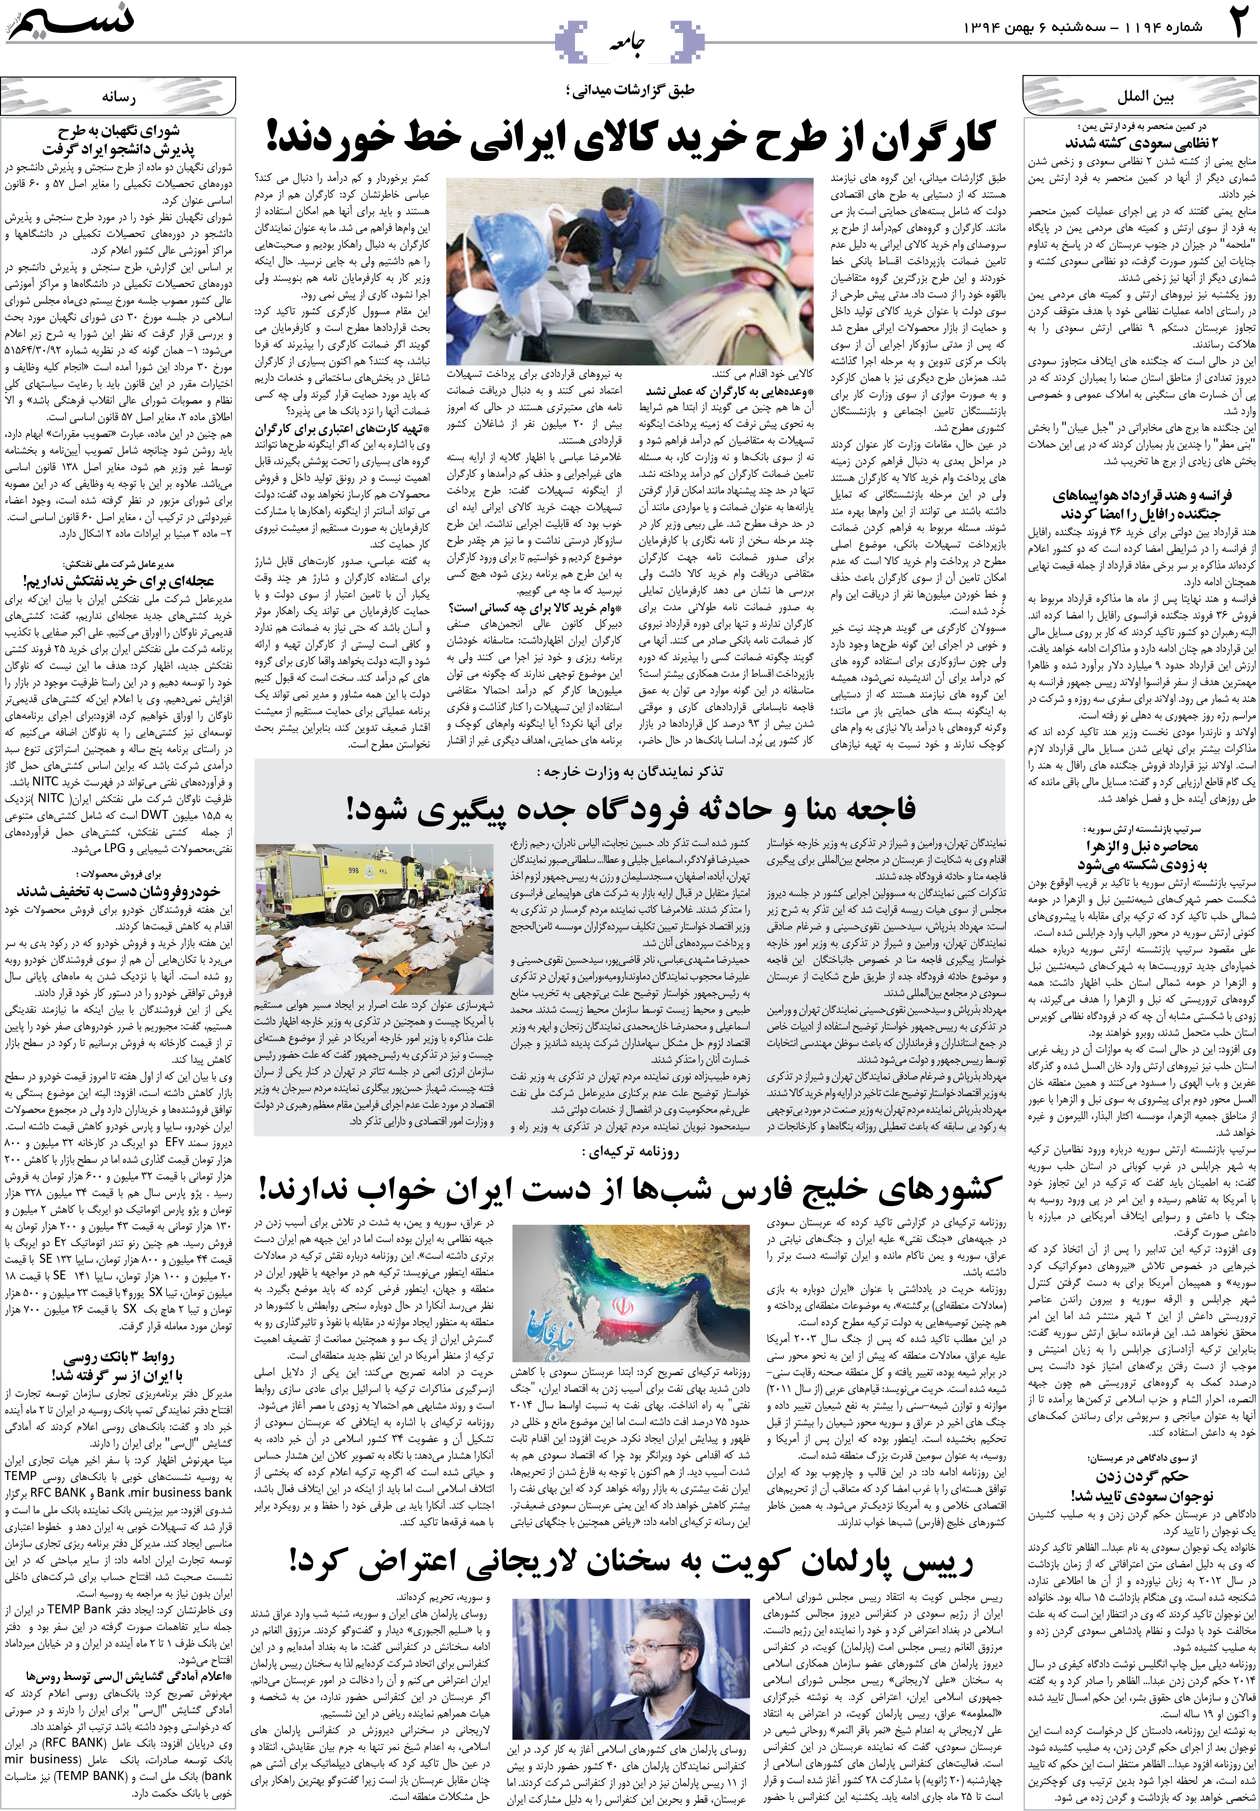 صفحه جامعه روزنامه نسیم شماره 1194